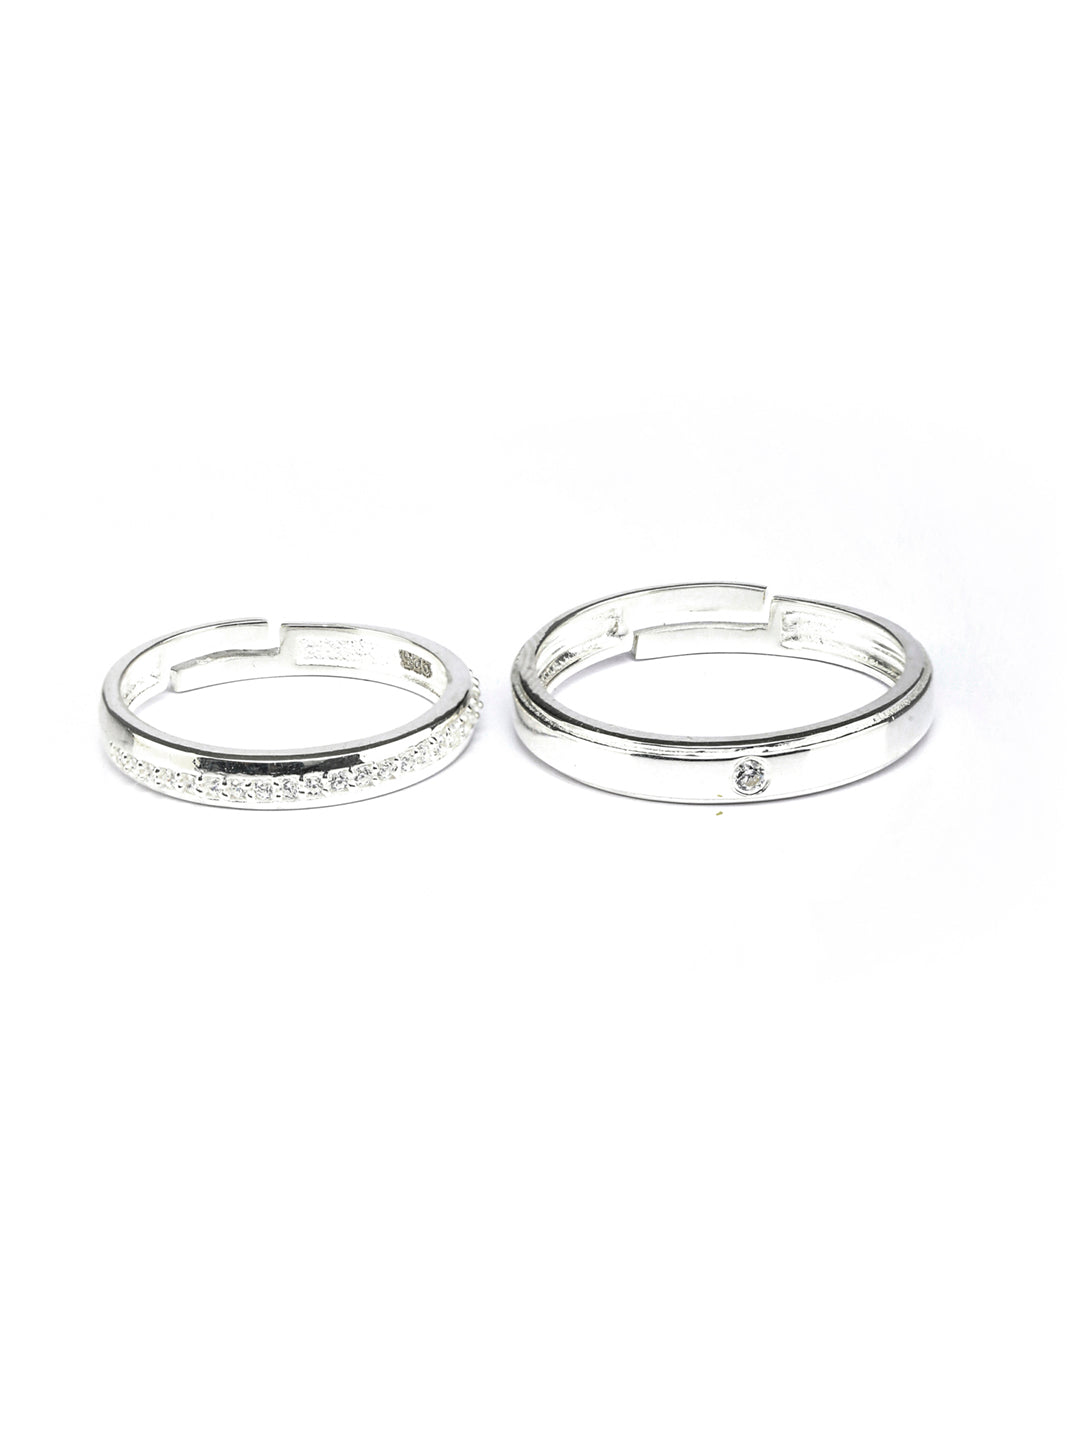 Priyaasi Women Eternity Sterling Silver Couple Rings - Distacart